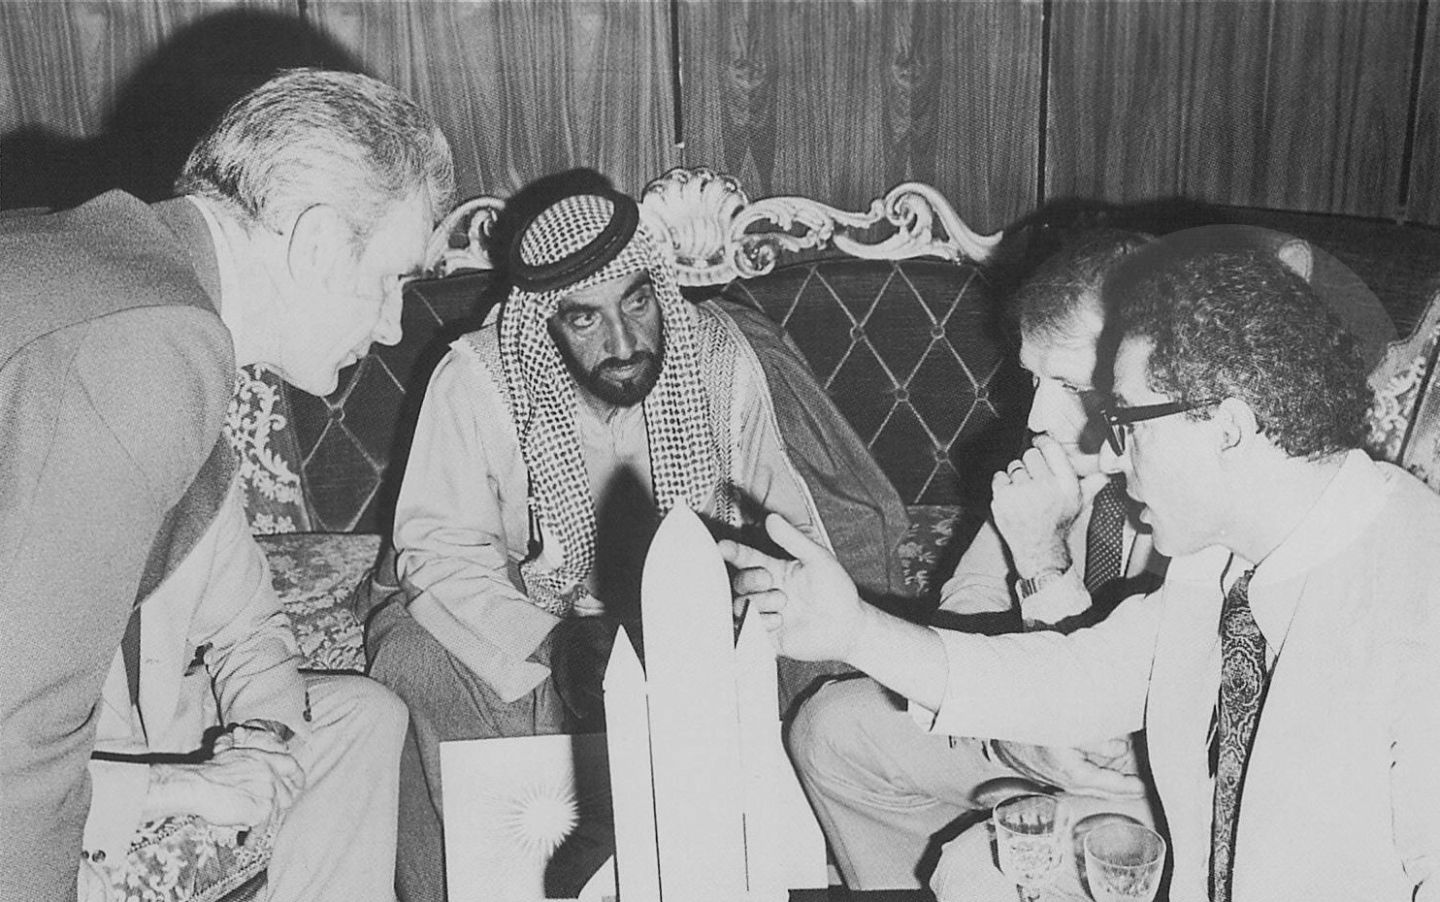 Sheikh Zayed with Nasa astronauts